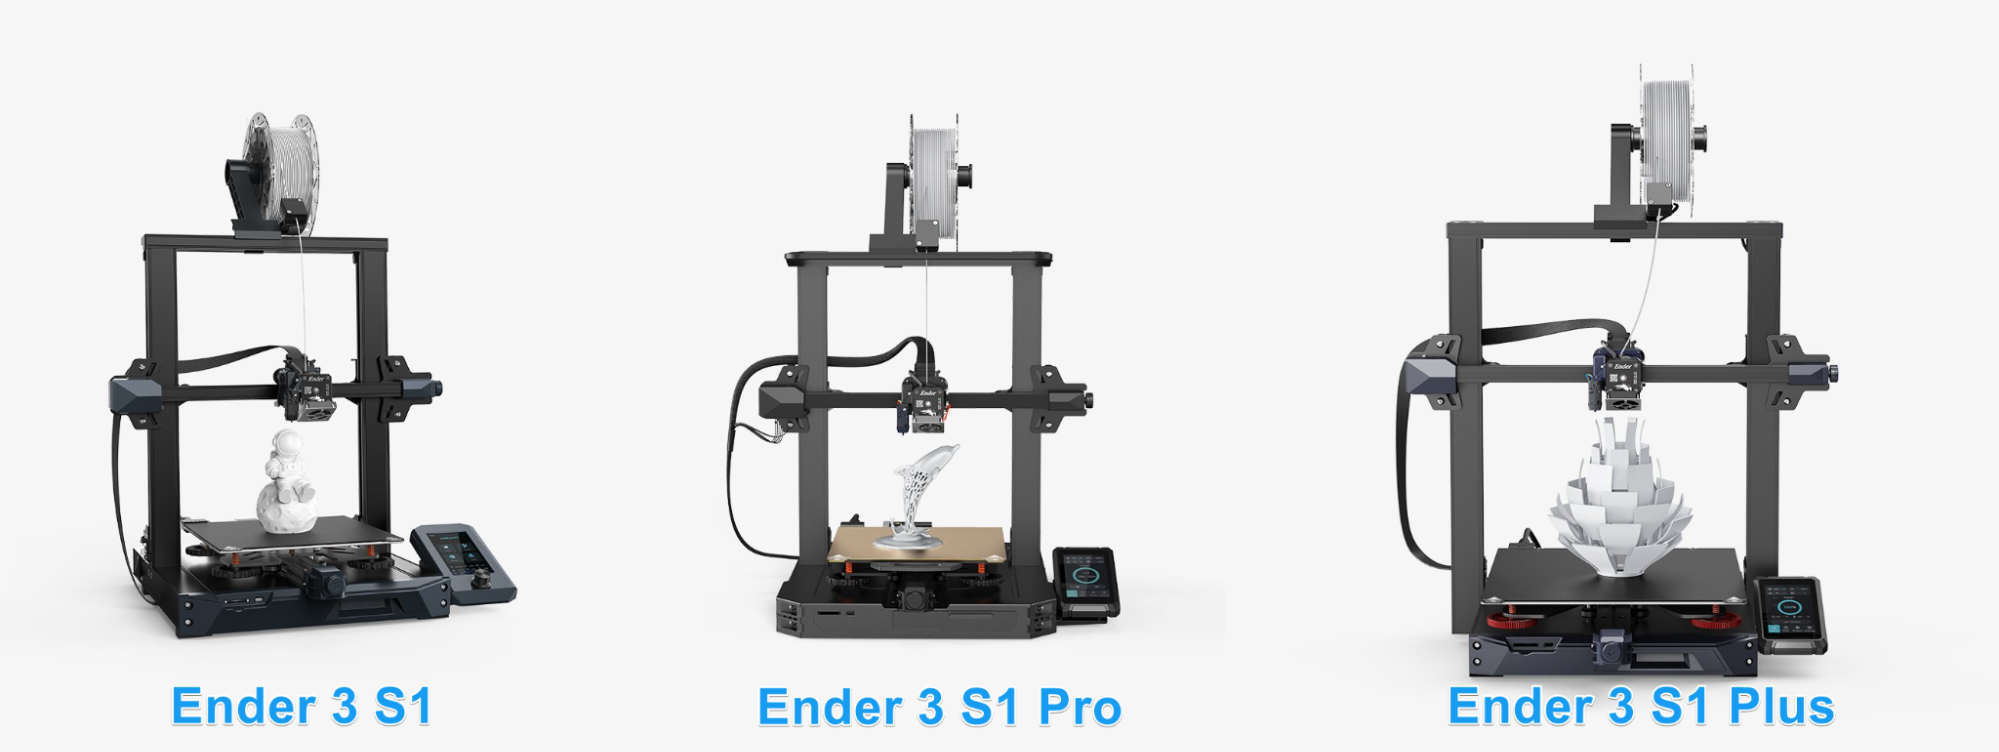 3D Printers  Ender Series